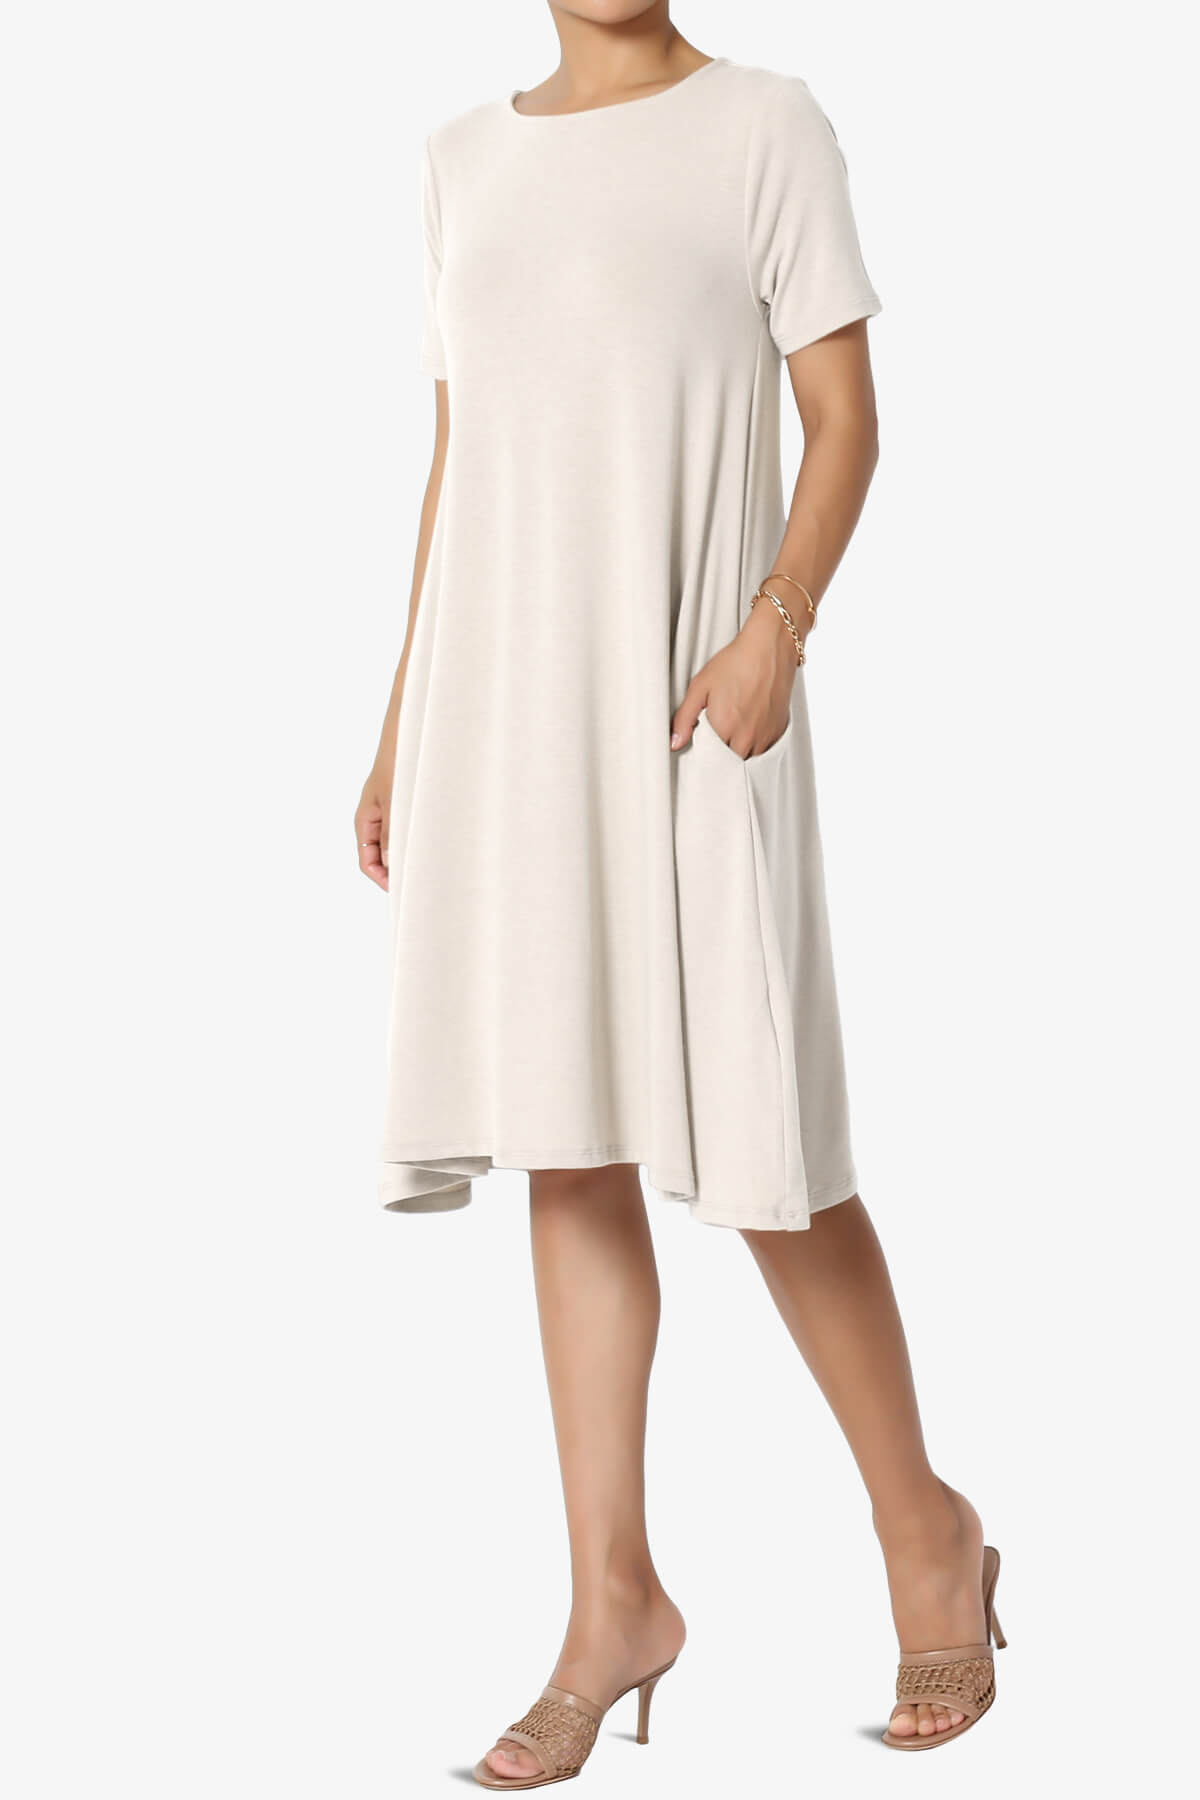 Allie Short Sleeve Jersey A-Line Dress SAND BEIGE_3